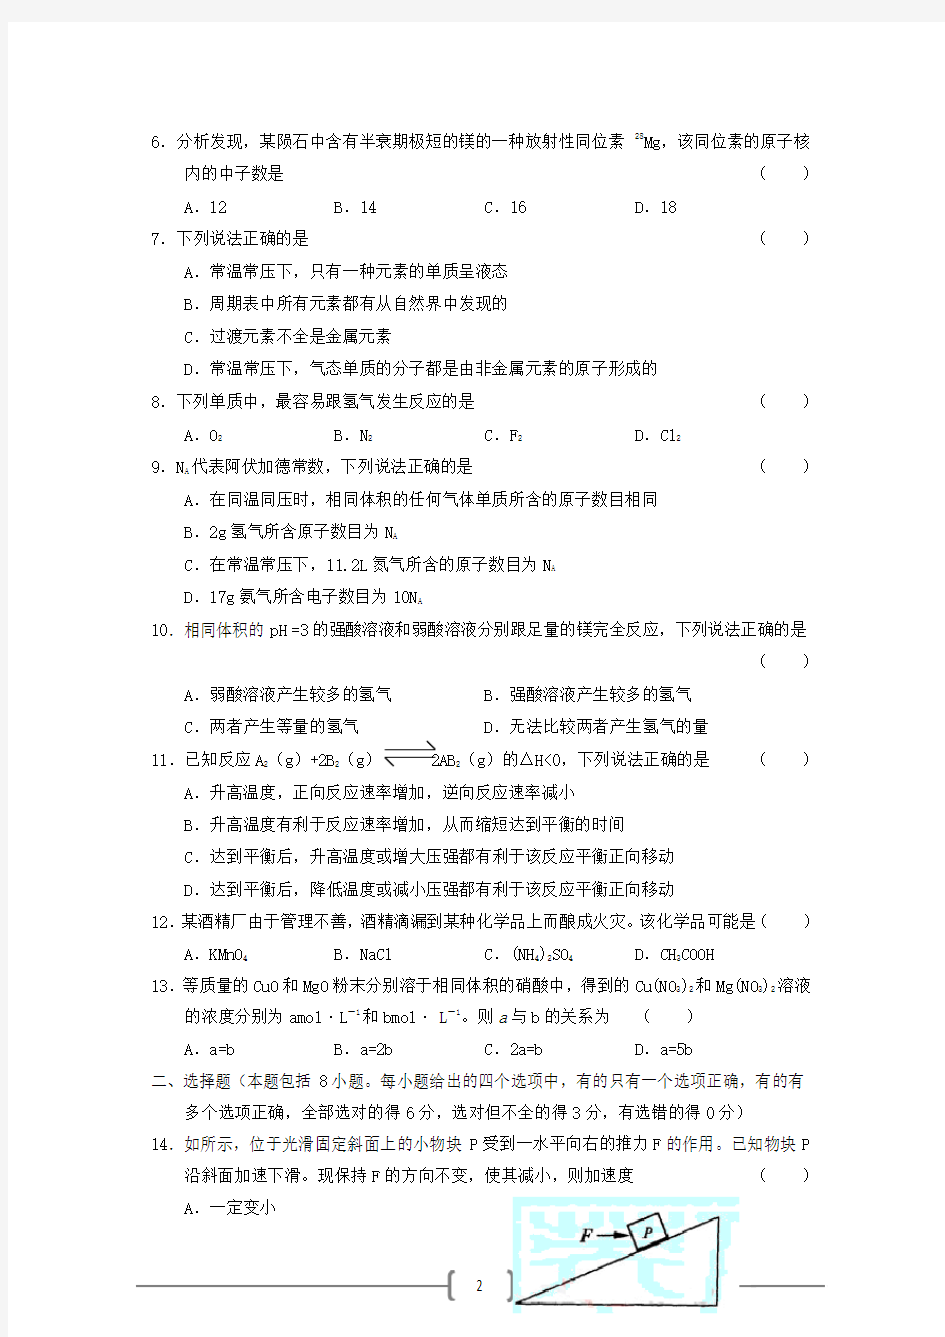 2005年高考理综试题及答案全国卷2(黑龙江、吉林、广西)